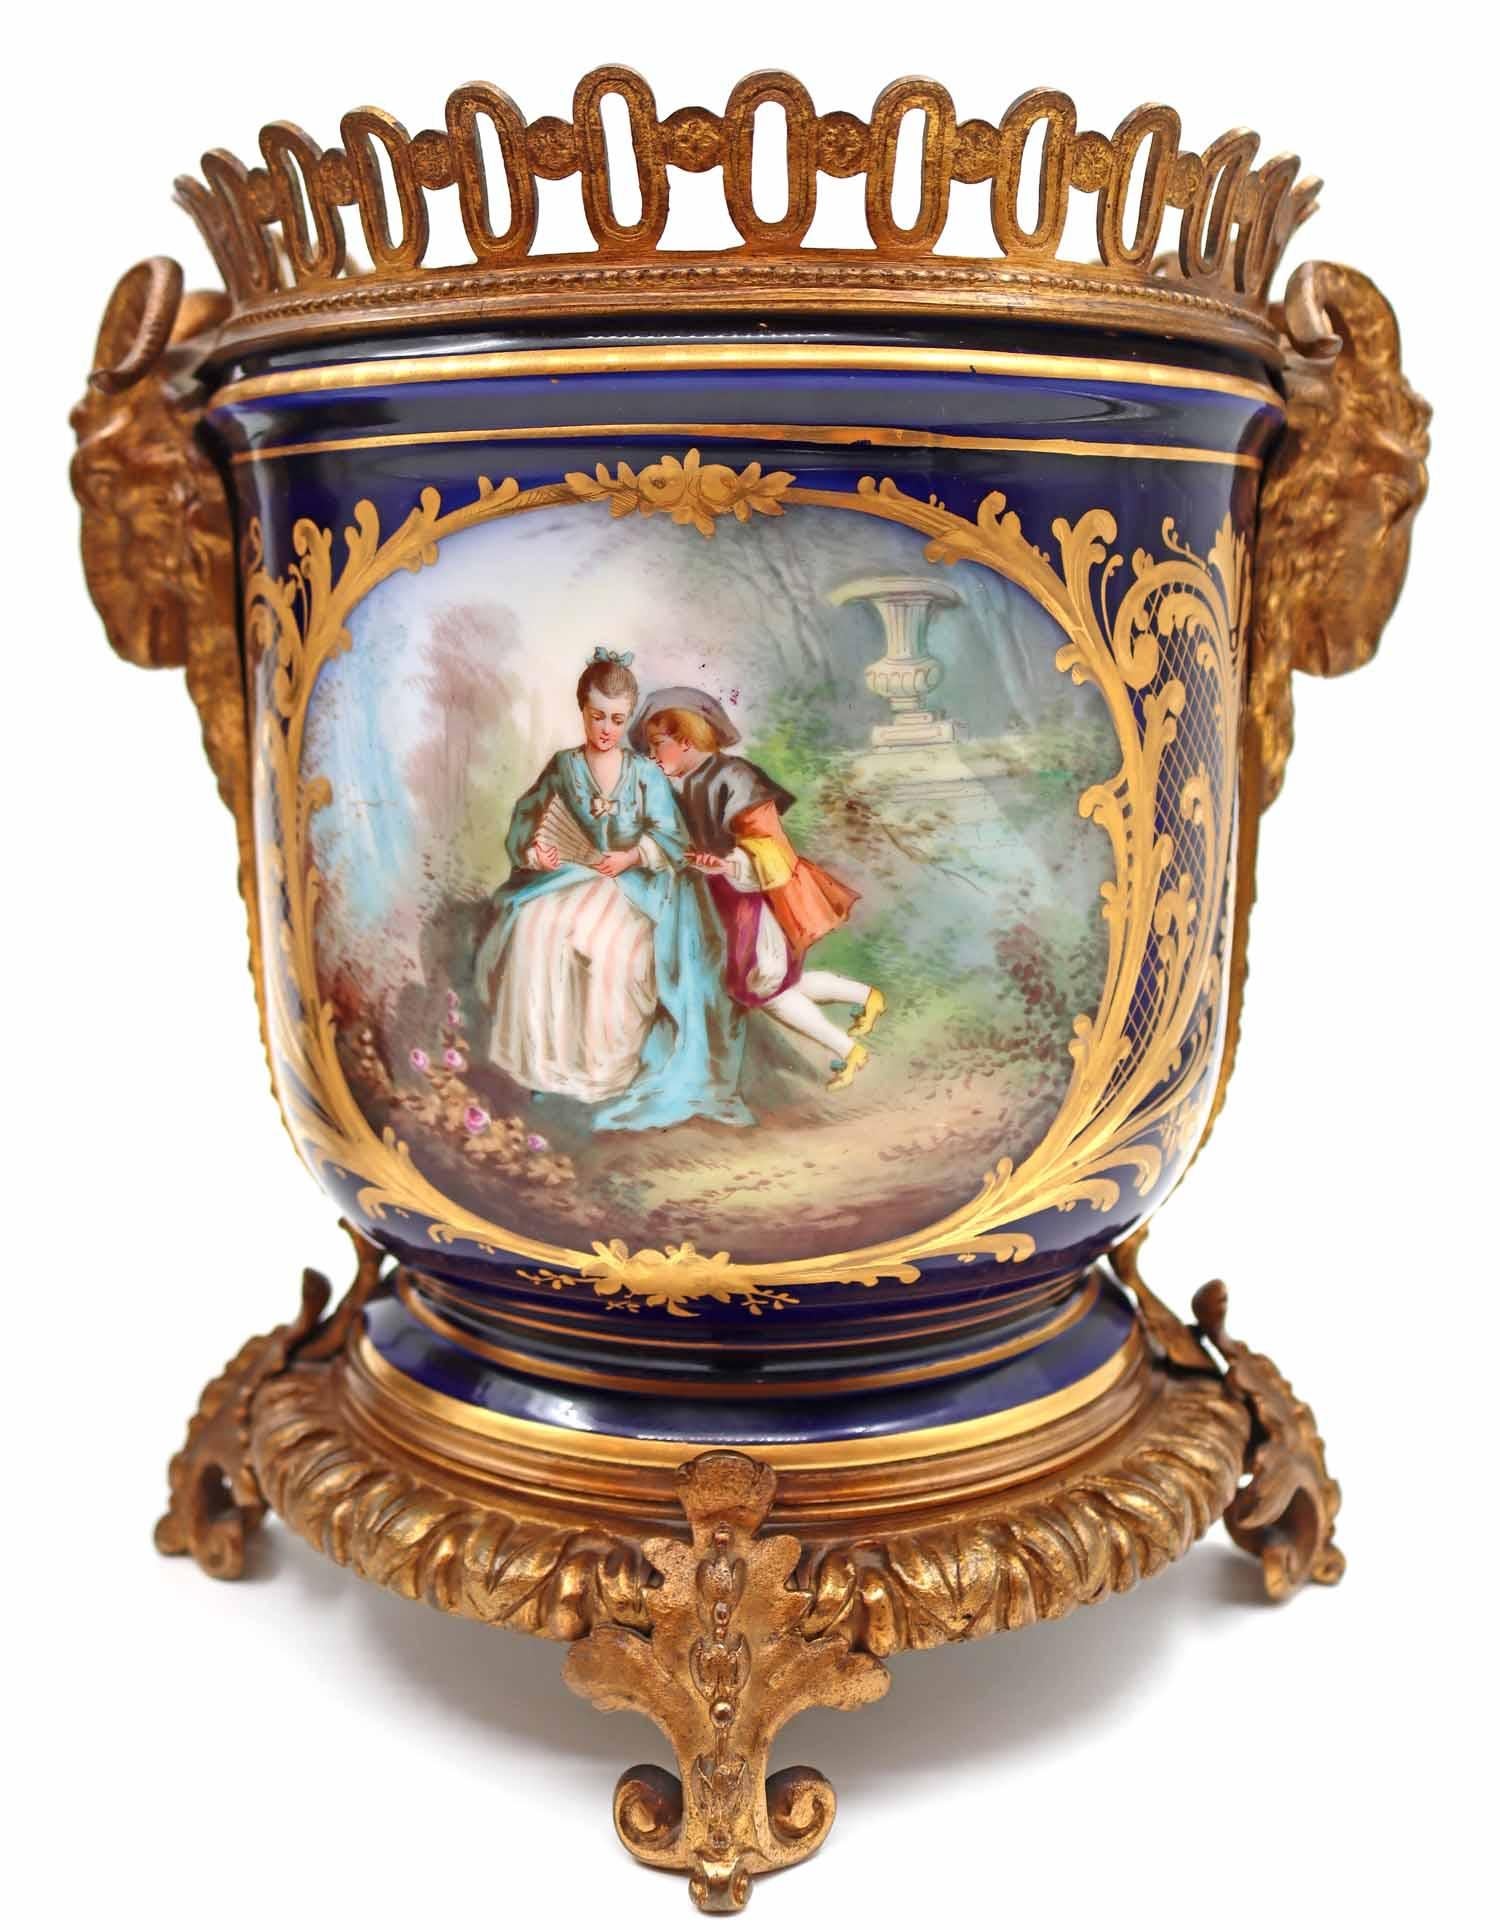 A pair of Napoleon III porcelain and gilt bronze planters, 19th century.
Measures: H: 24 cm, W: 24 cm, D: 19 cm.